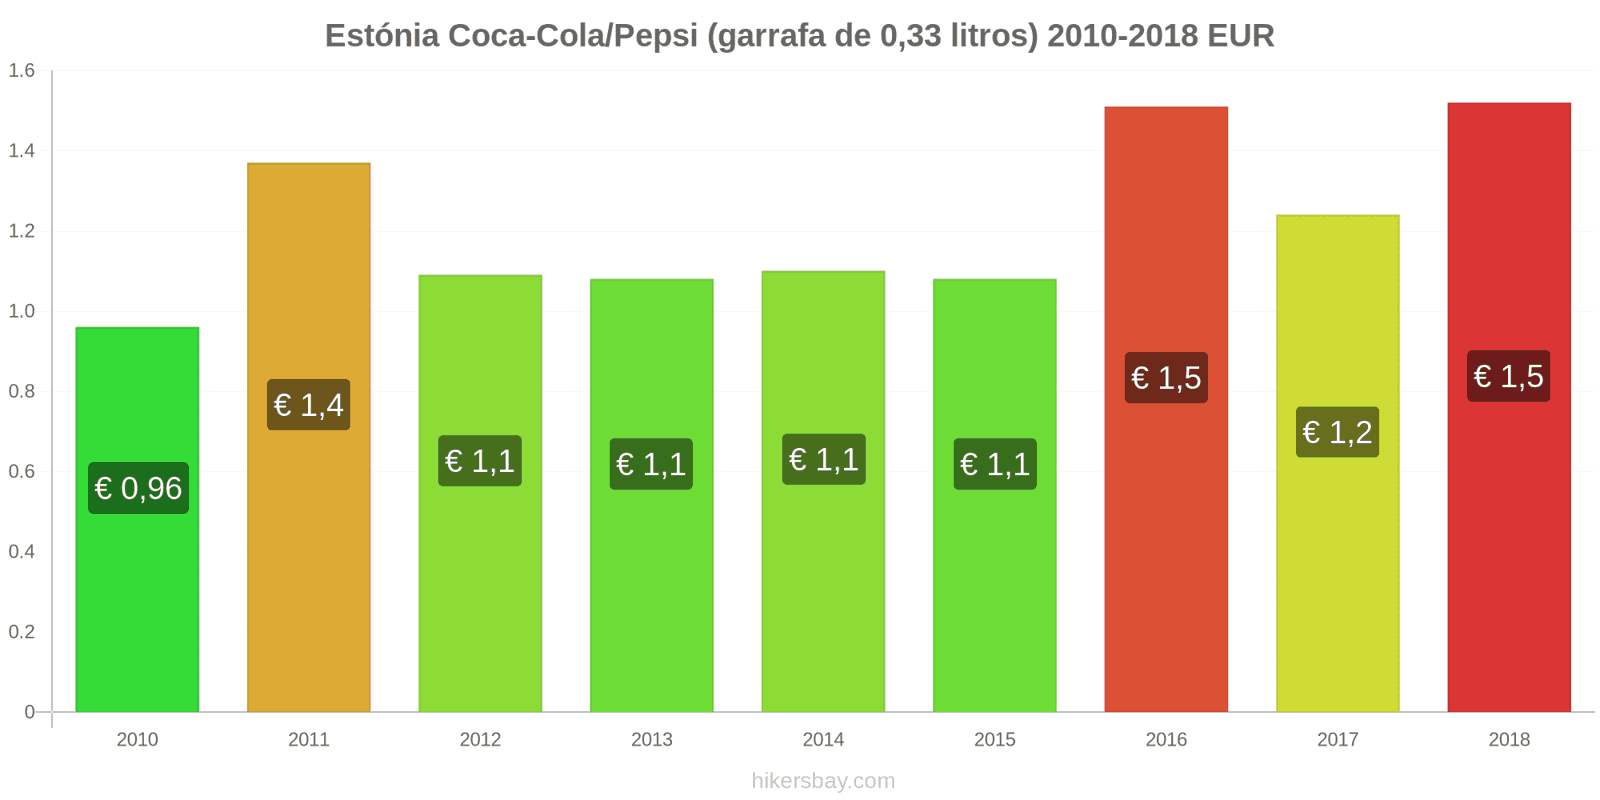 Estónia mudanças de preços Coca-Cola/Pepsi (garrafa de 0.33 litros) hikersbay.com